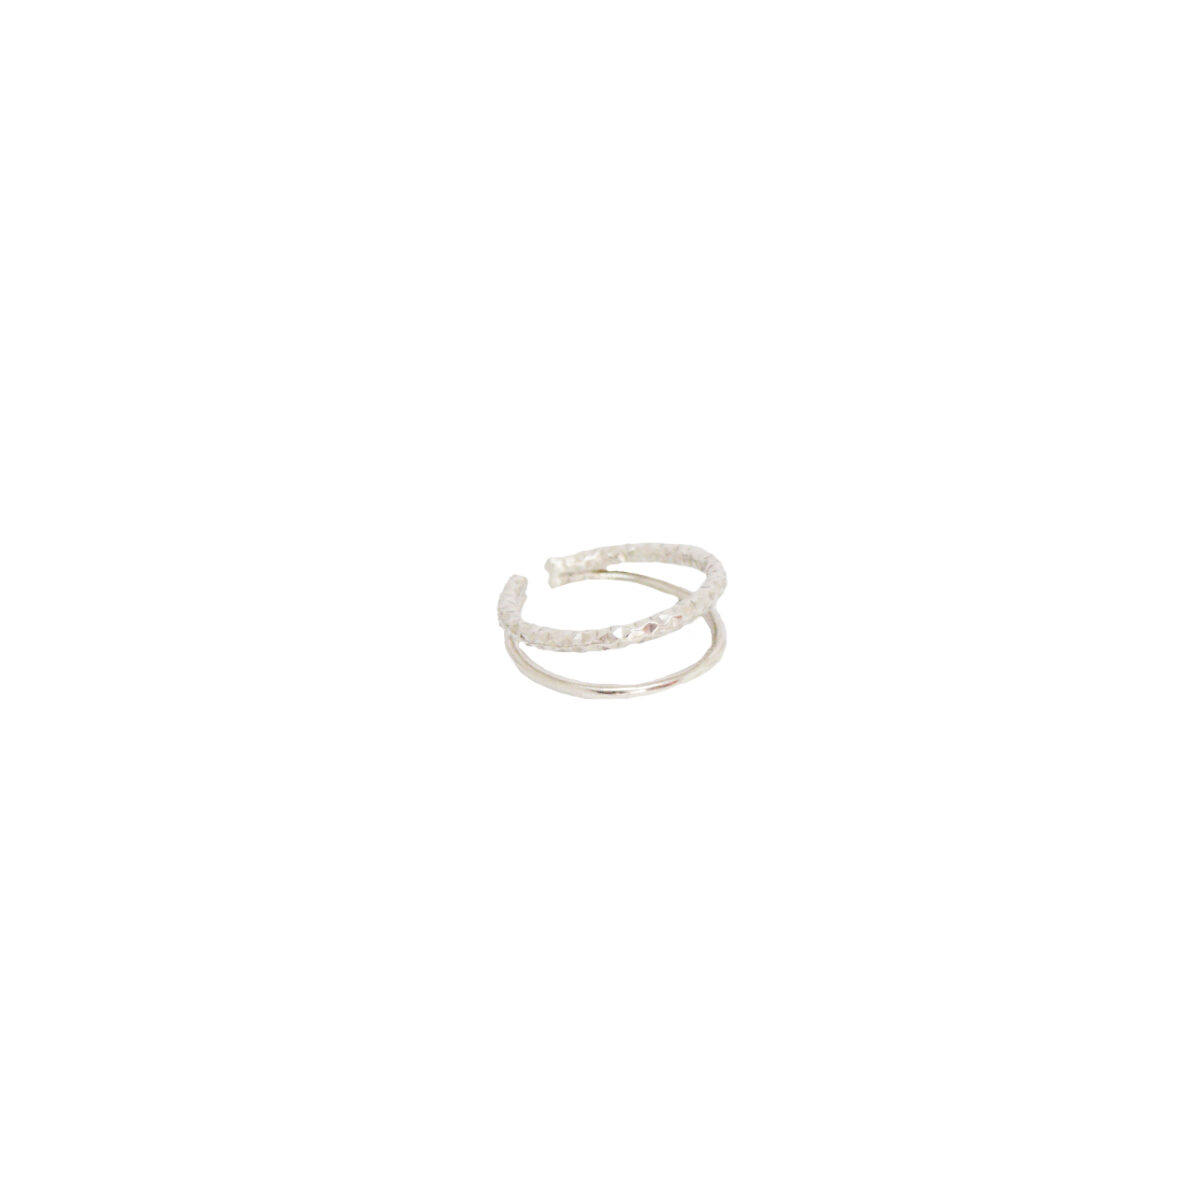 “Duo” ασημένιο δαχτυλίδι “Duo” ασημένιο δαχτυλίδι “Duo” ασημένιο δαχτυλίδι 4